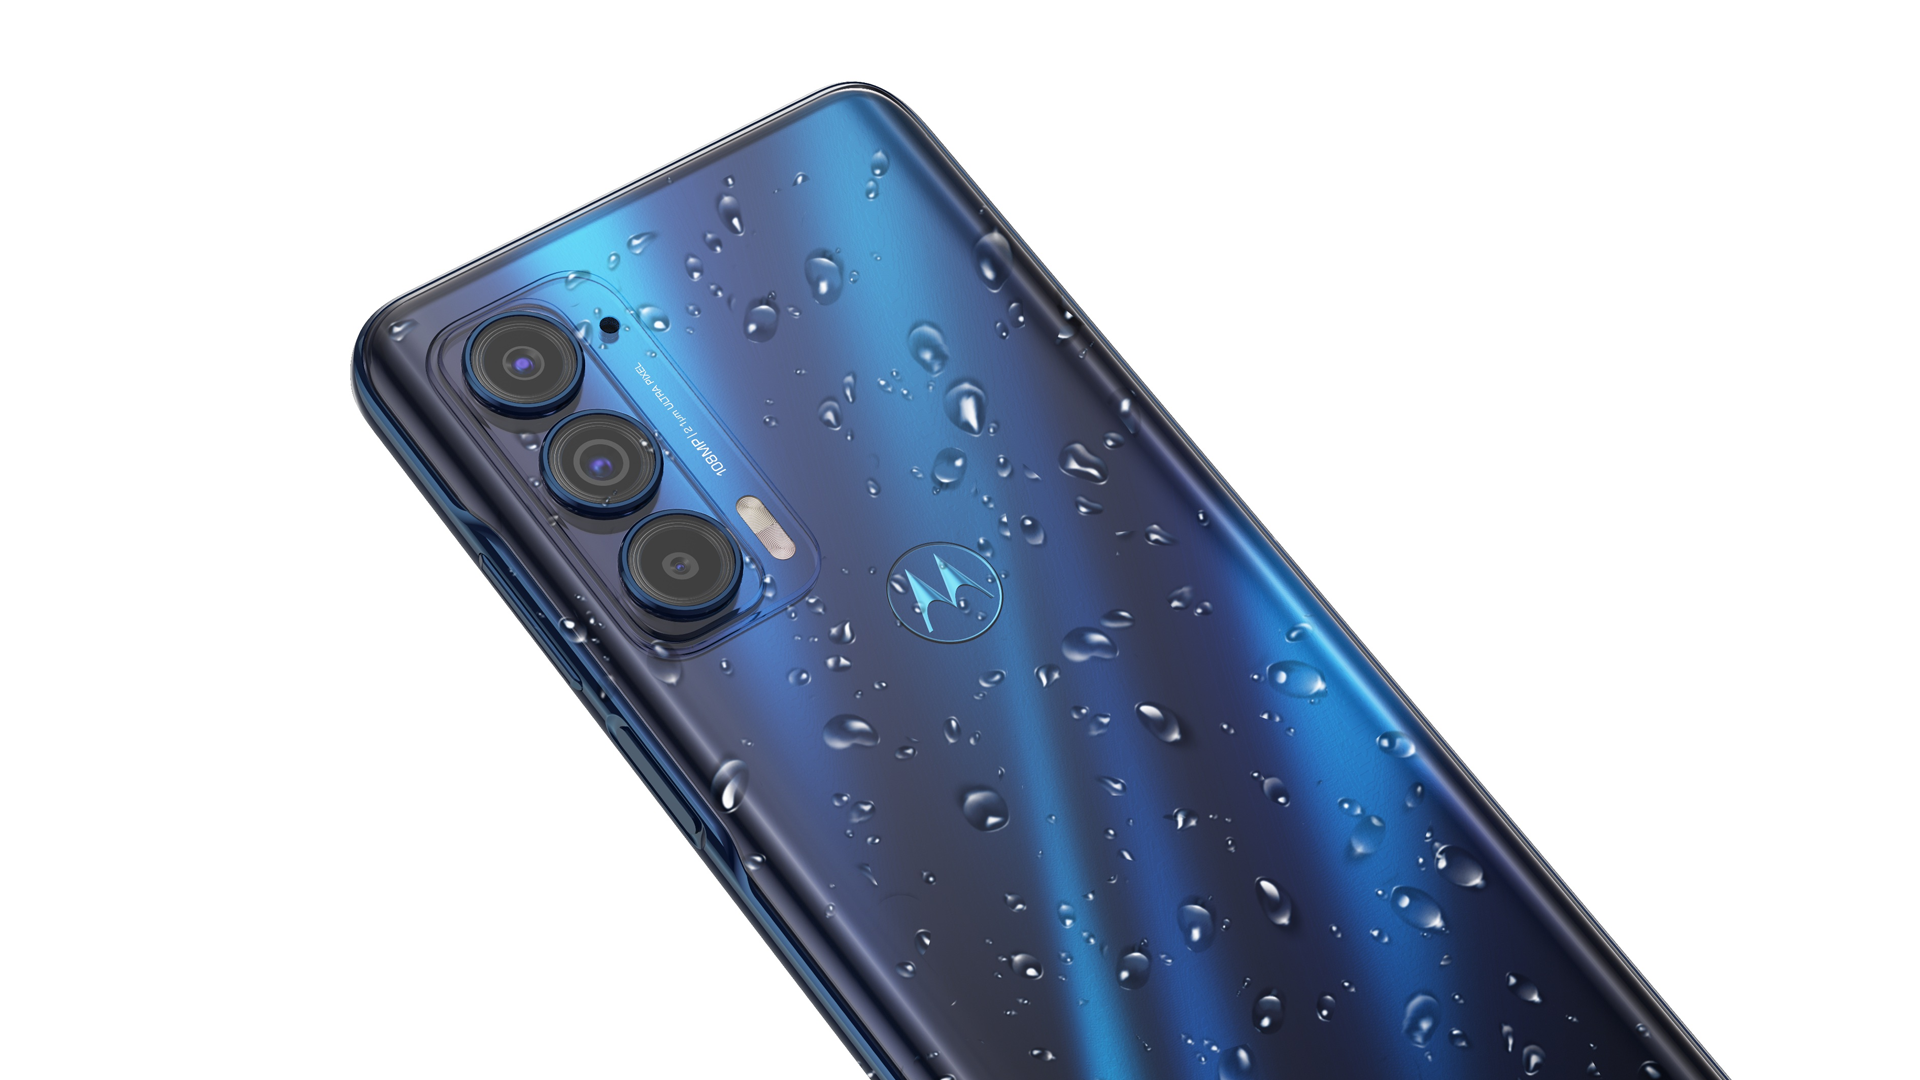 Motorola Edge 2021 có màu xanh dương được bao phủ bởi nước.